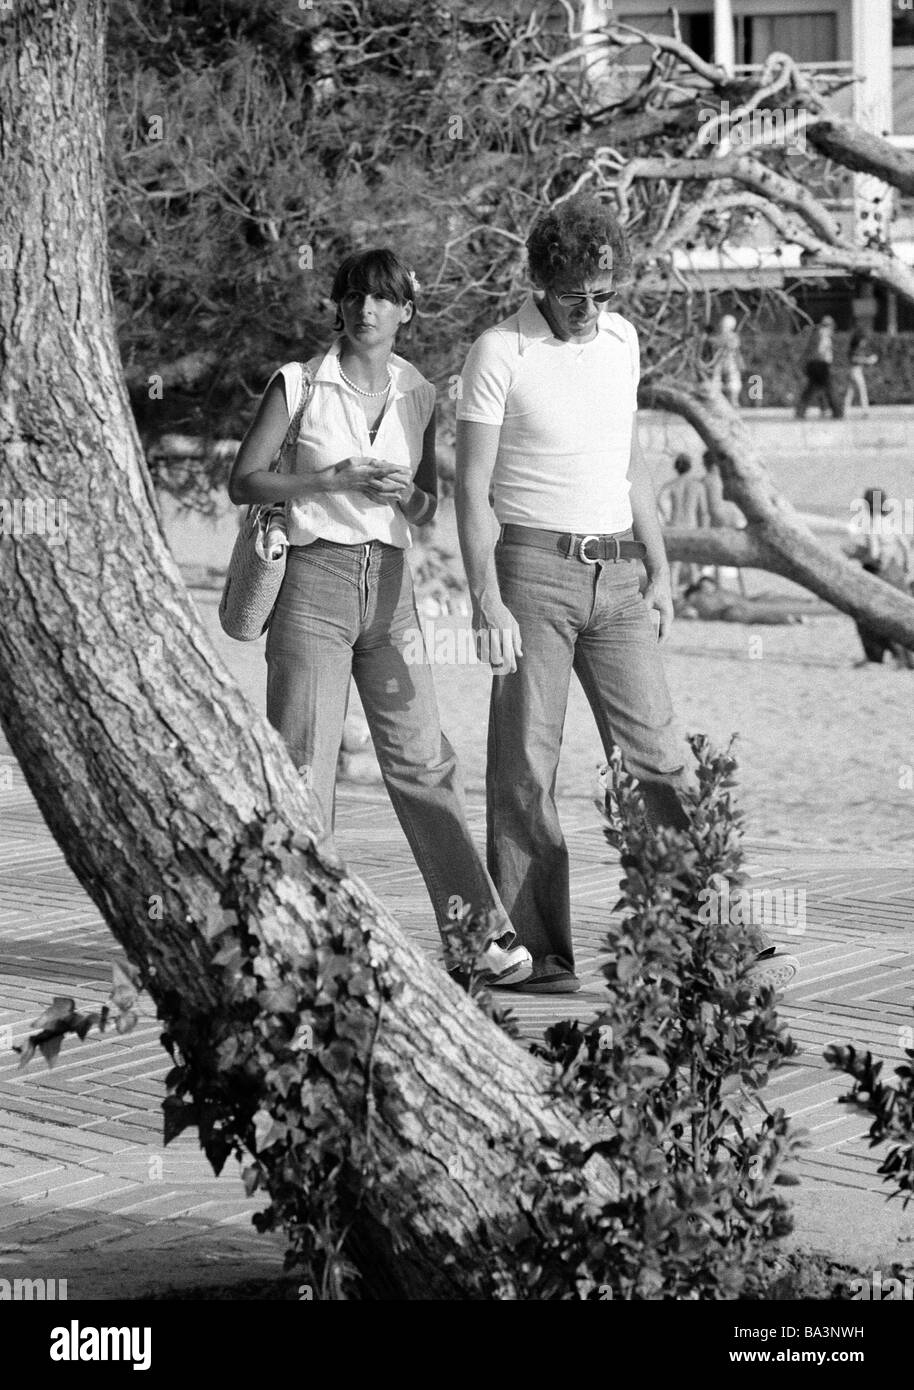 Negli anni settanta, foto in bianco e nero, persone coppia giovane vestito in tempo libero passa per una passeggiata, di età compresa tra i 25 ed i 35 anni, Isole Baleari Spagna, Maiorca Foto Stock